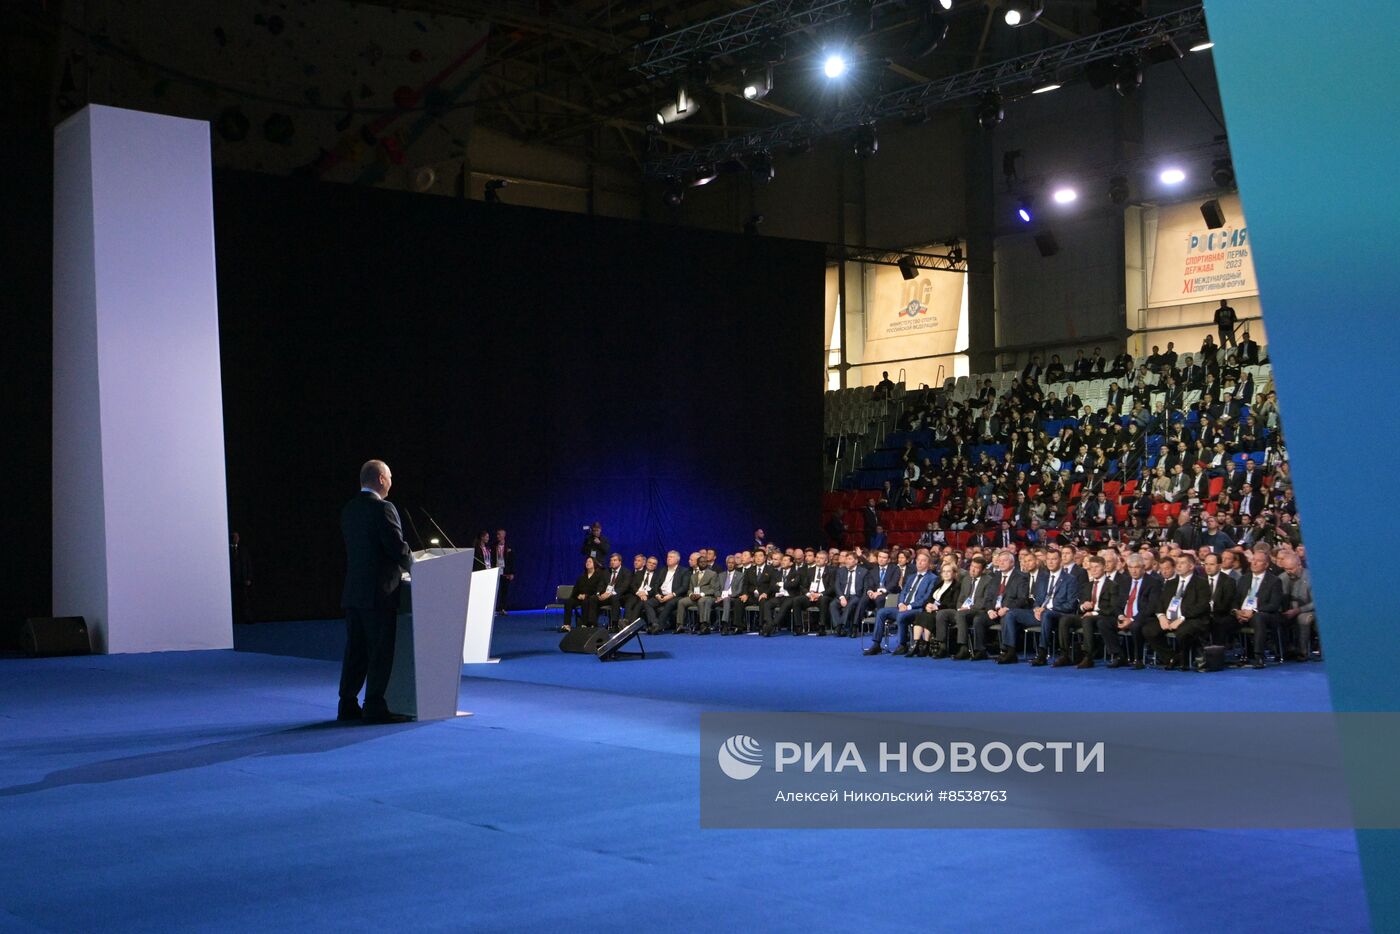 Международный спортивный форум "Россия – спортивная держава" в Перми